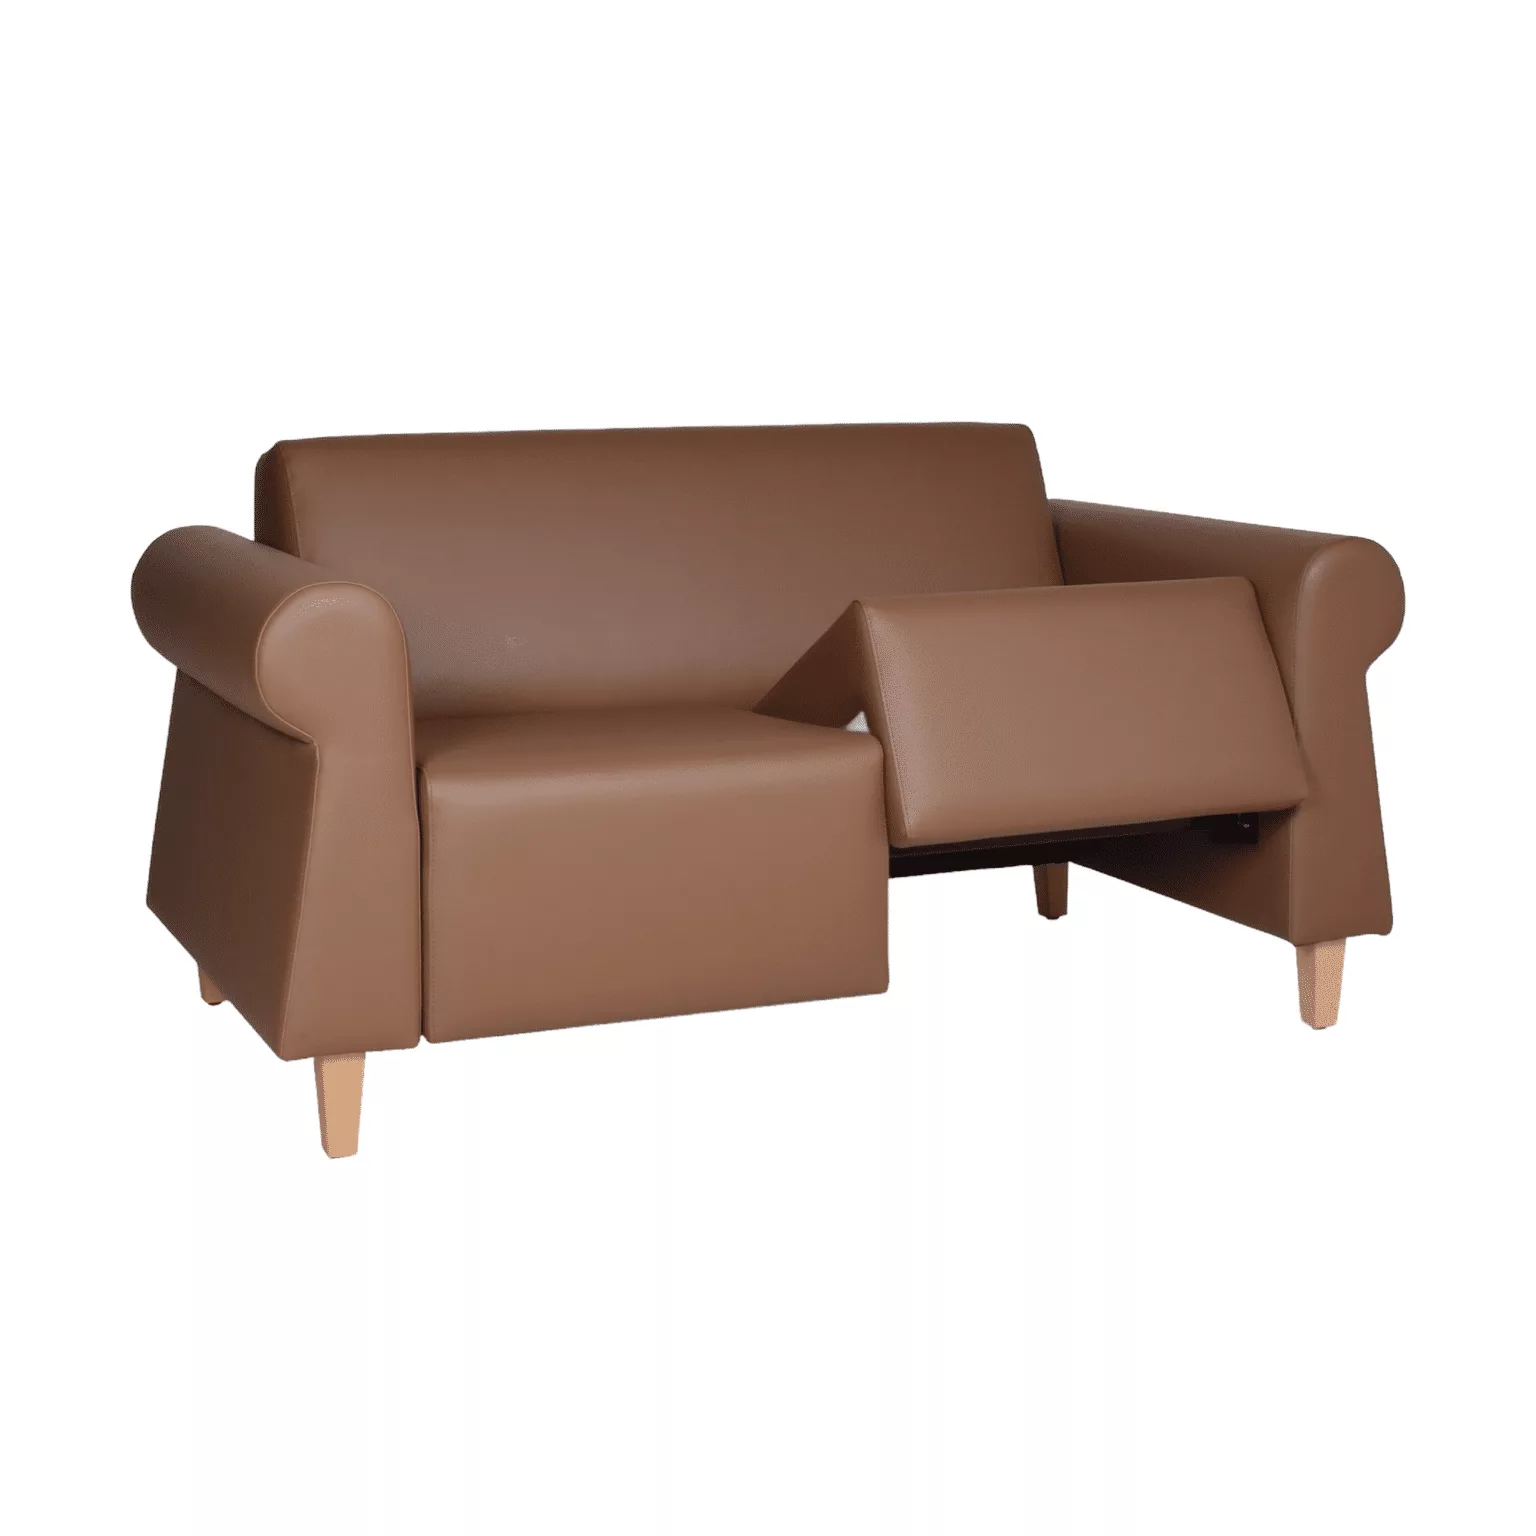 Bruine zitbank met ronde armleuningen en uitneembare zitting op houten meubelpoten.